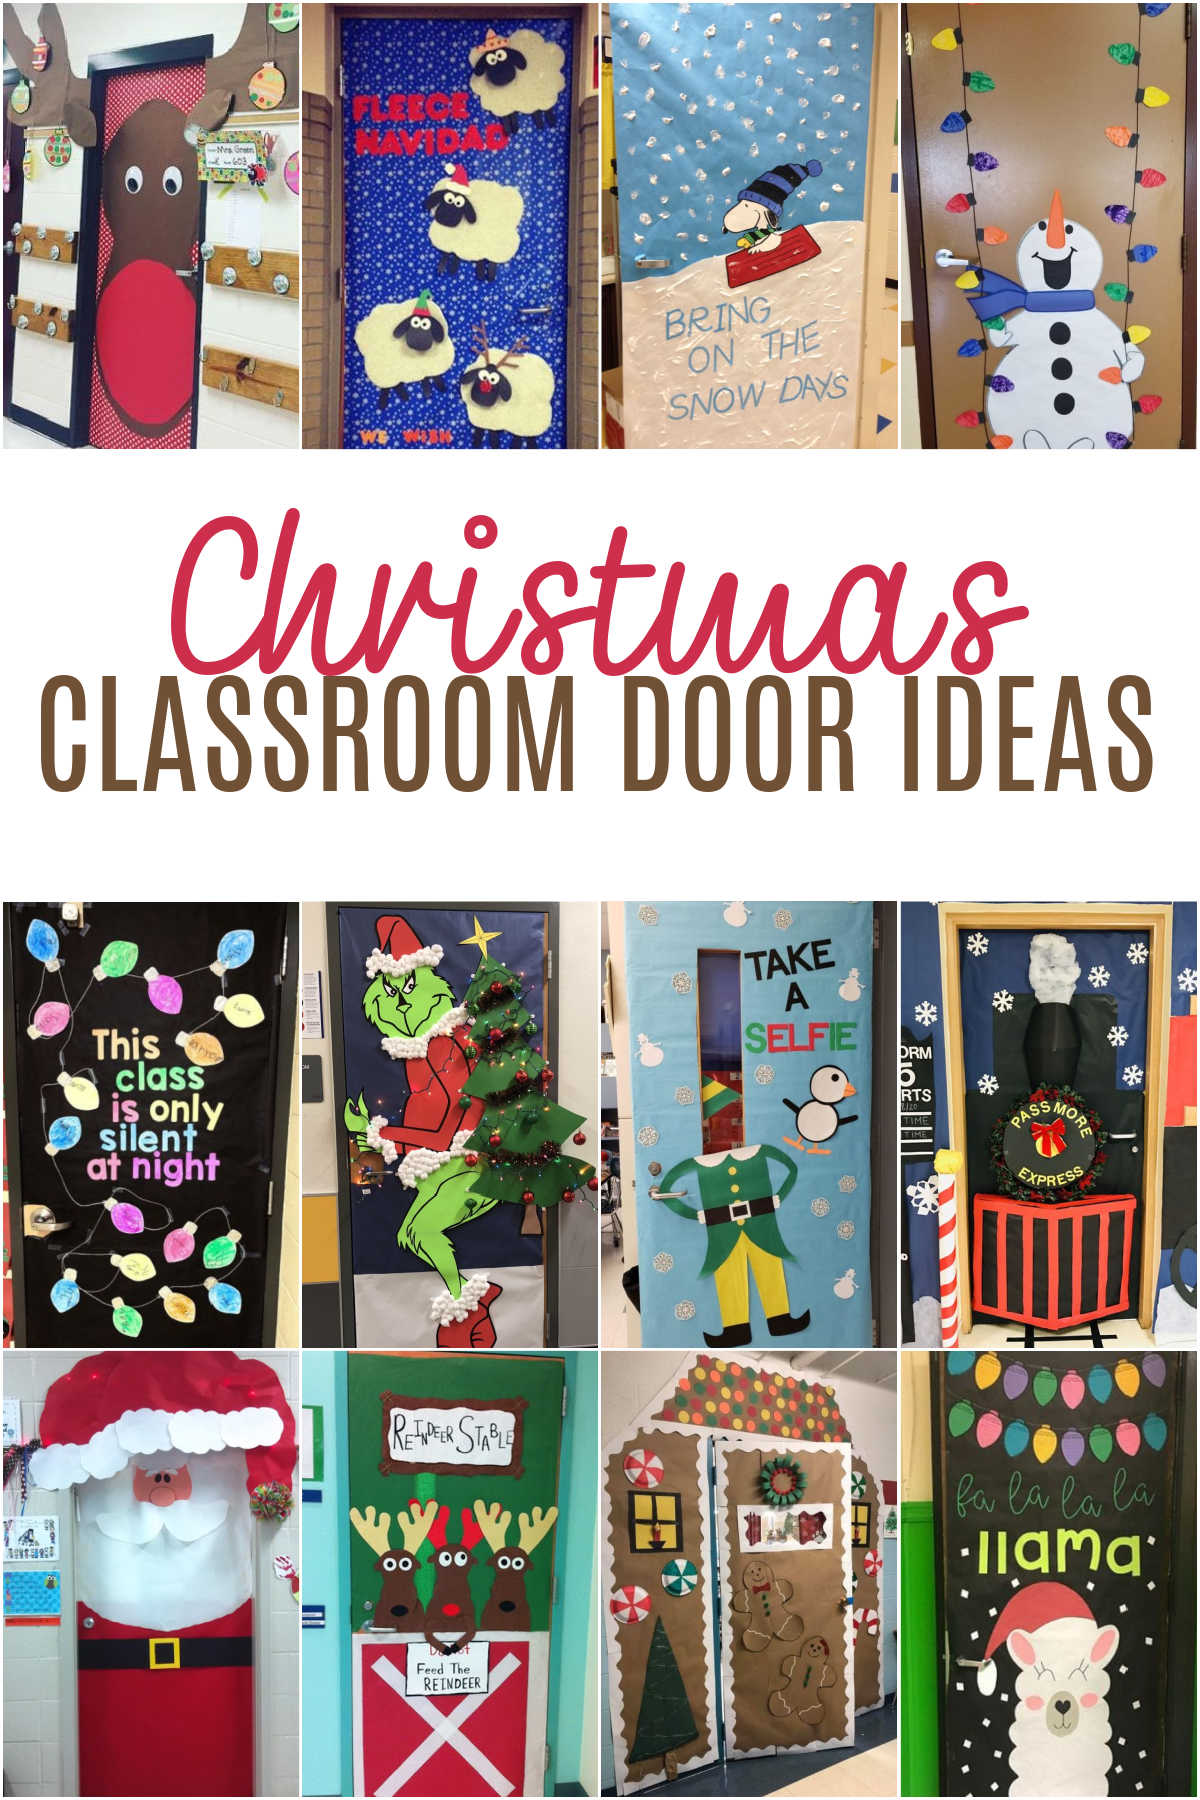 School Holiday Door Decorating Contest - Teacher's Brain